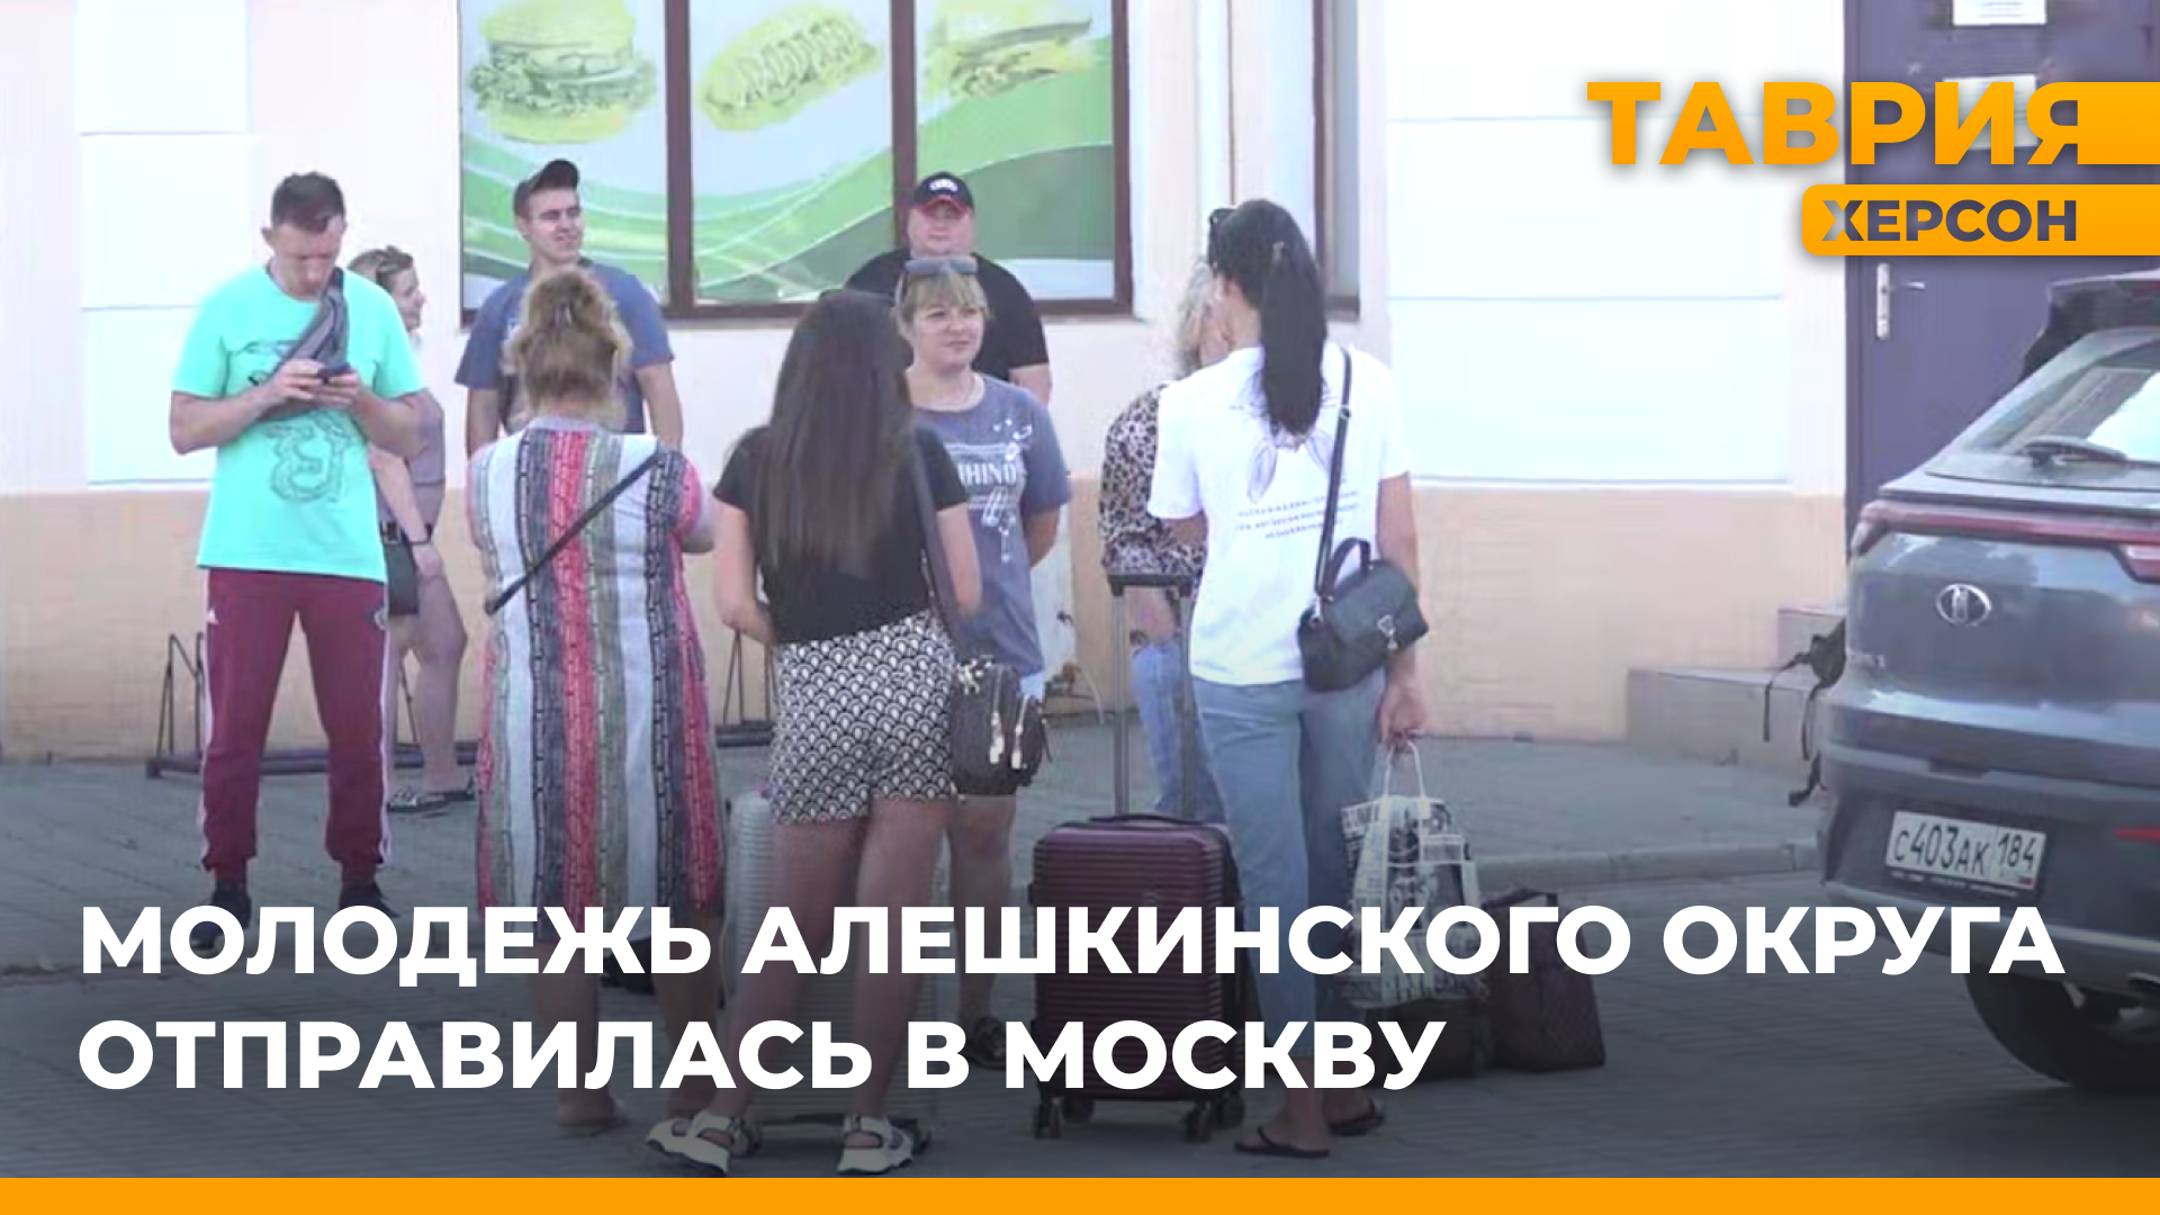 Молодежь Алешкинского округа отправилась на отдых в Москву